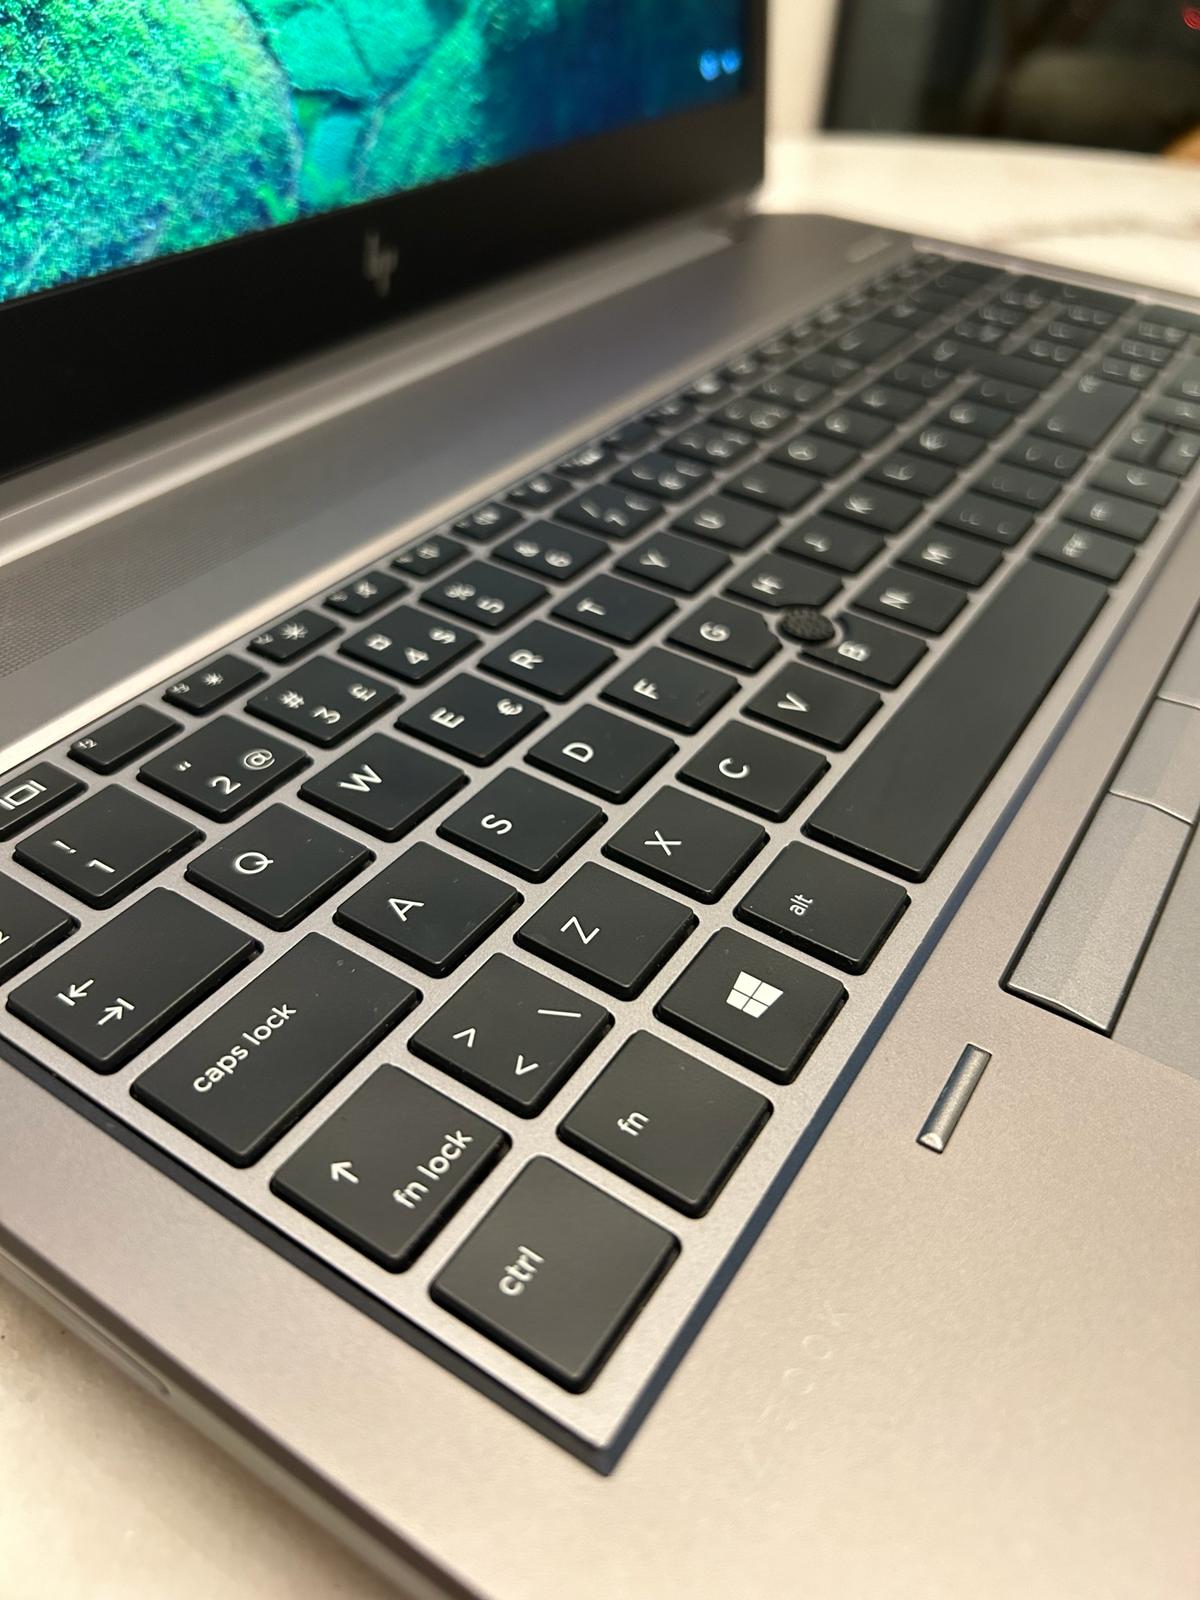 HP ZBook G5 (2020)